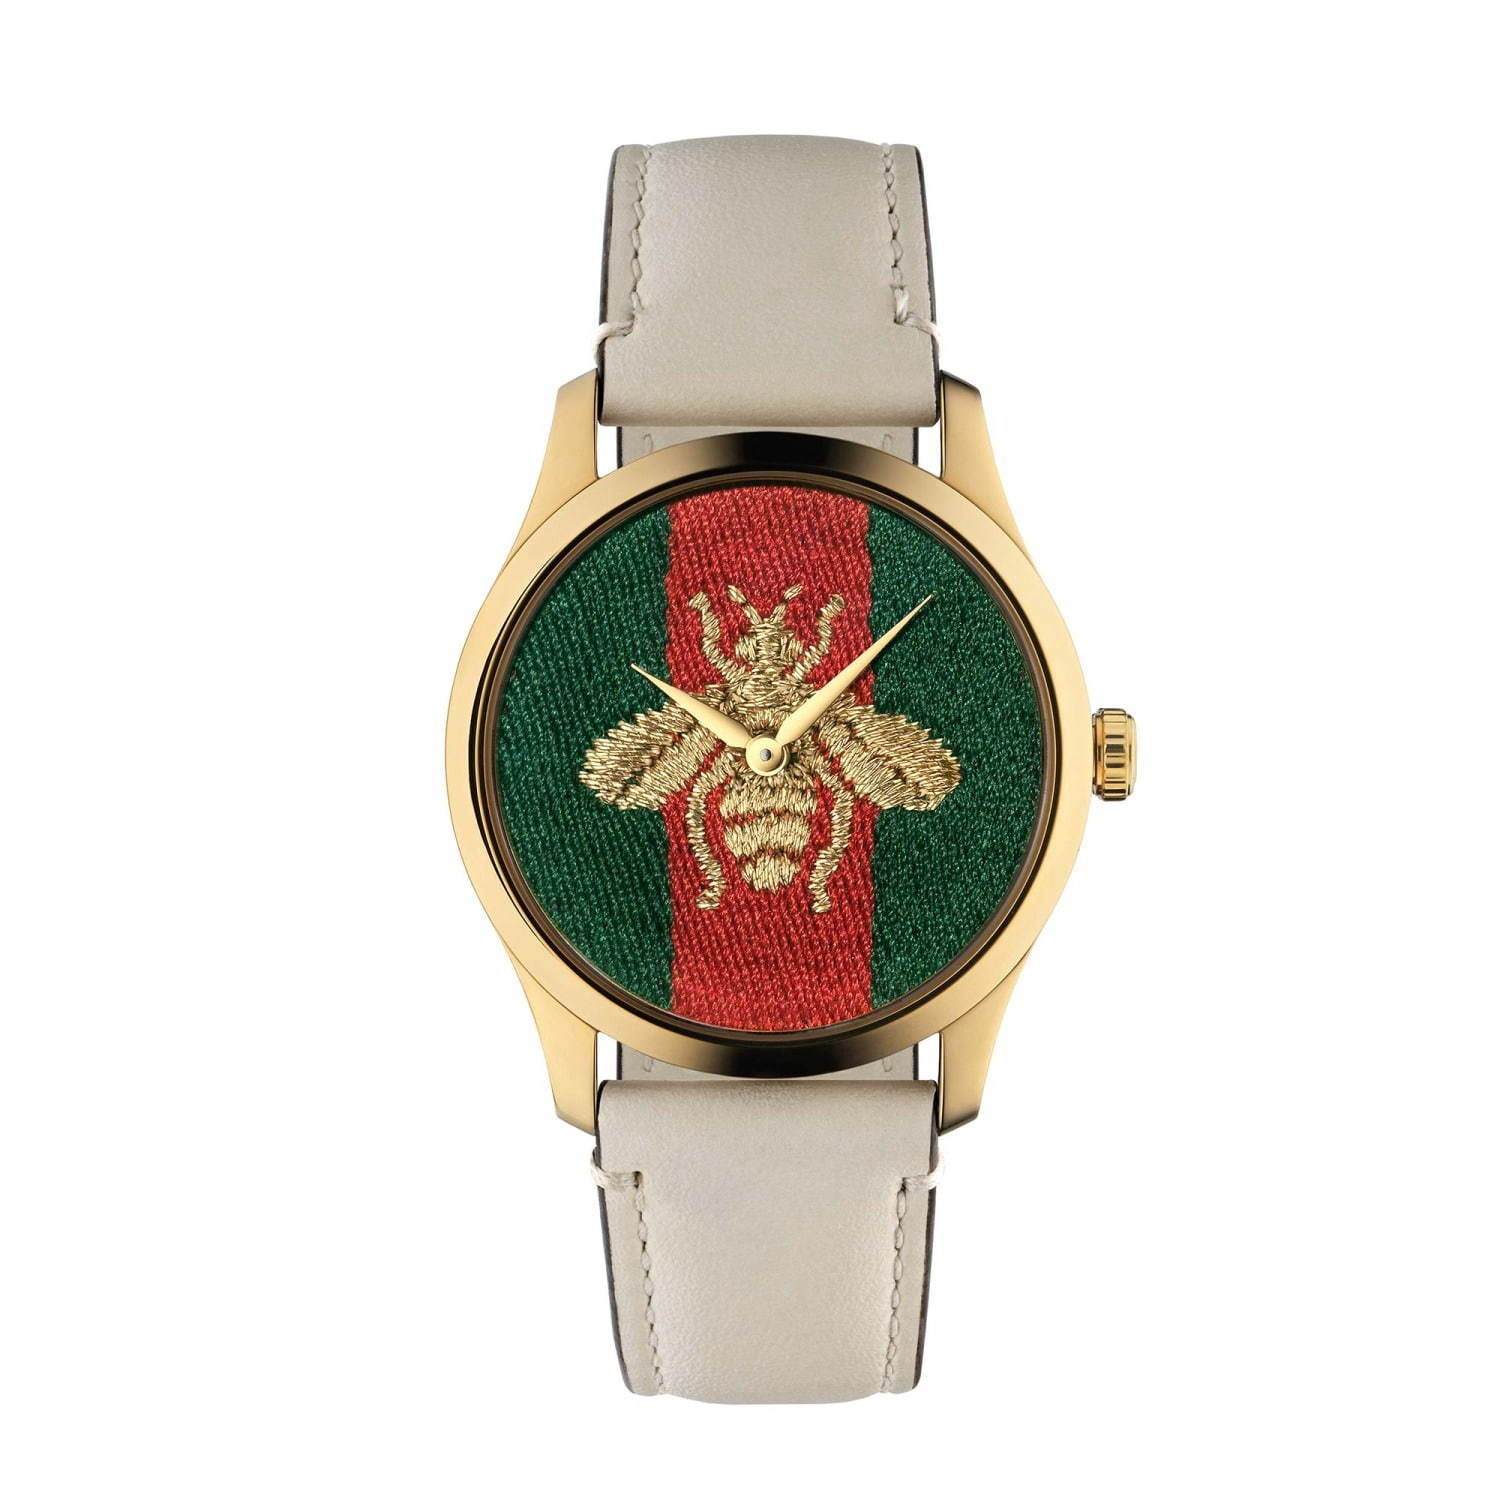 グッチの腕時計「G-タイムレス」新作、ビー モチーフを描いたグリーン